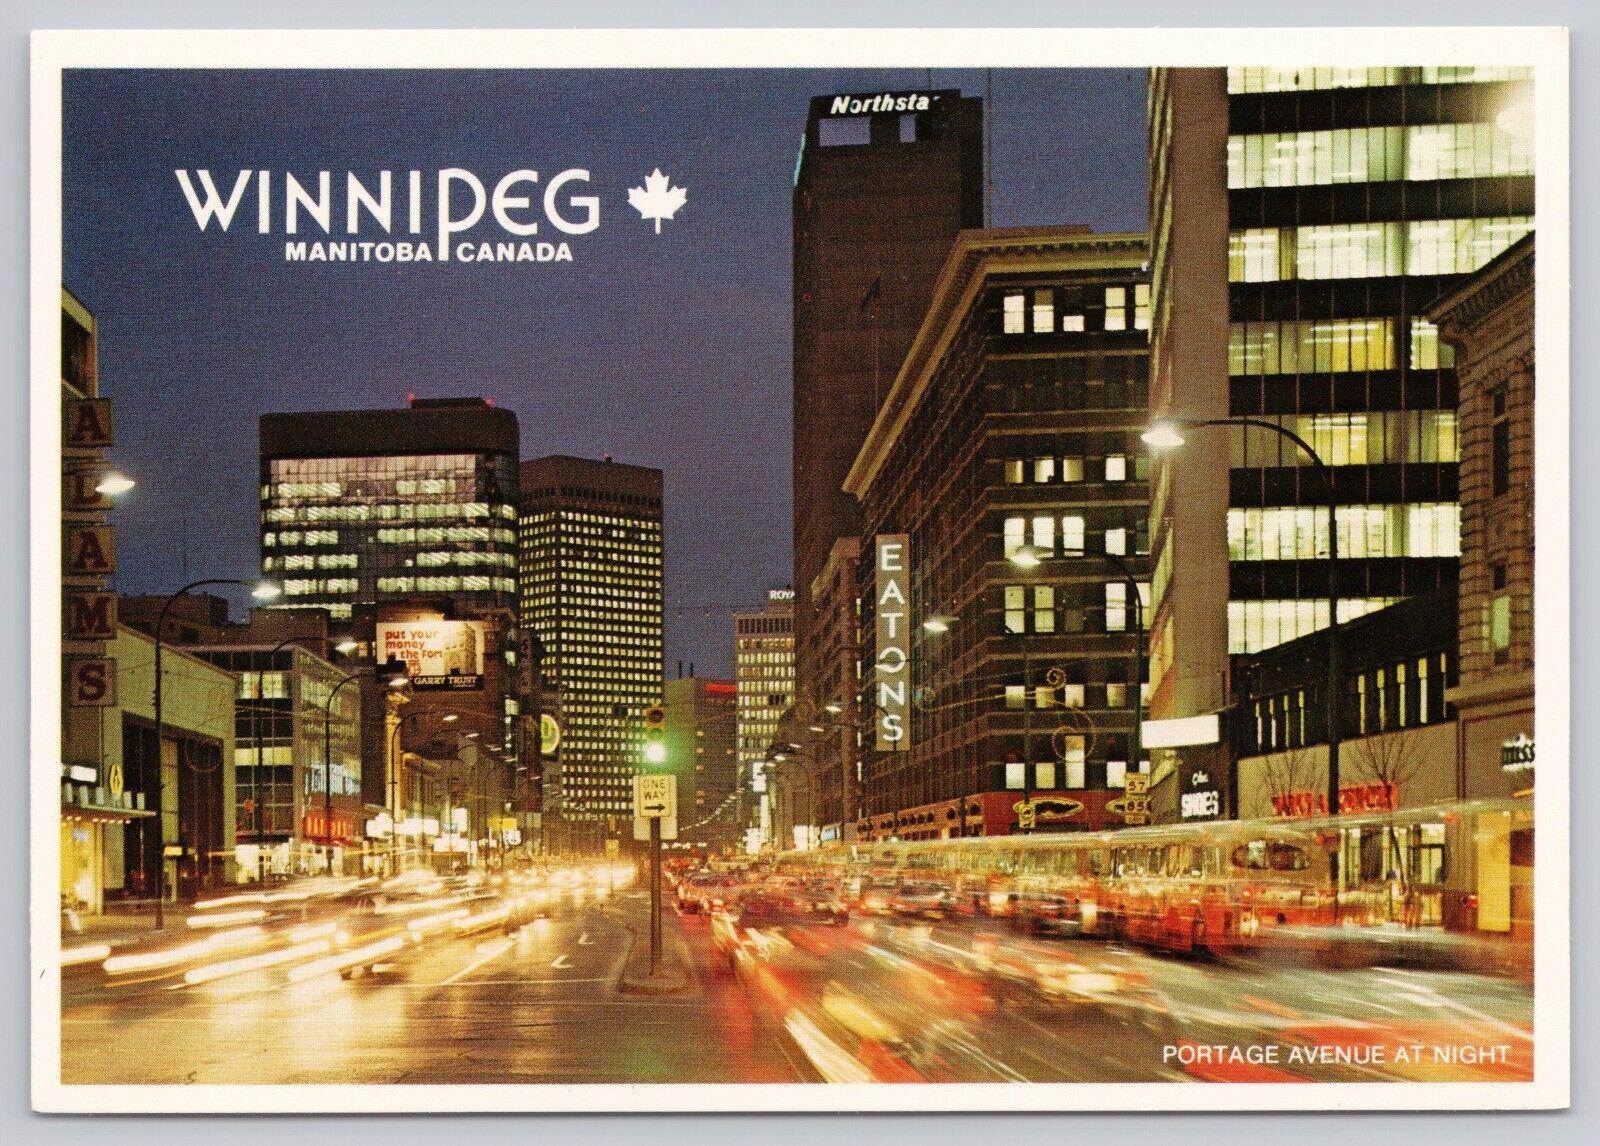 Winnipeg Manitoba Canada, Portage Avenue at Night, Eatons, Vintage Postcard